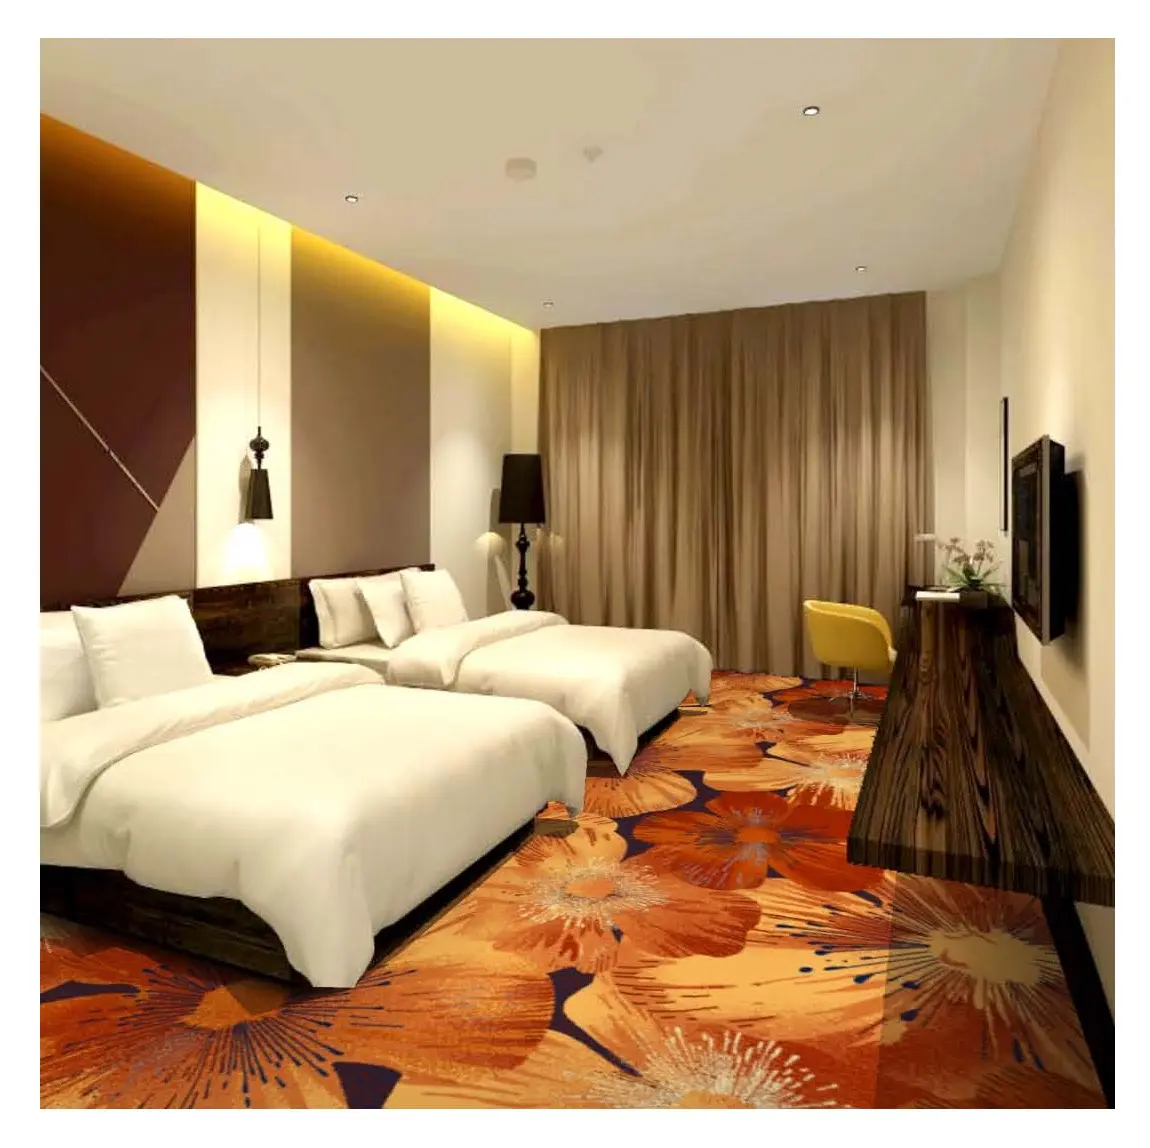 Venda quente Luxo Alta Qualidade Mão Tufted tapete Macio Interior Grandes Tapetes Modernos tapete Para O Quarto Do Hotel Corredor